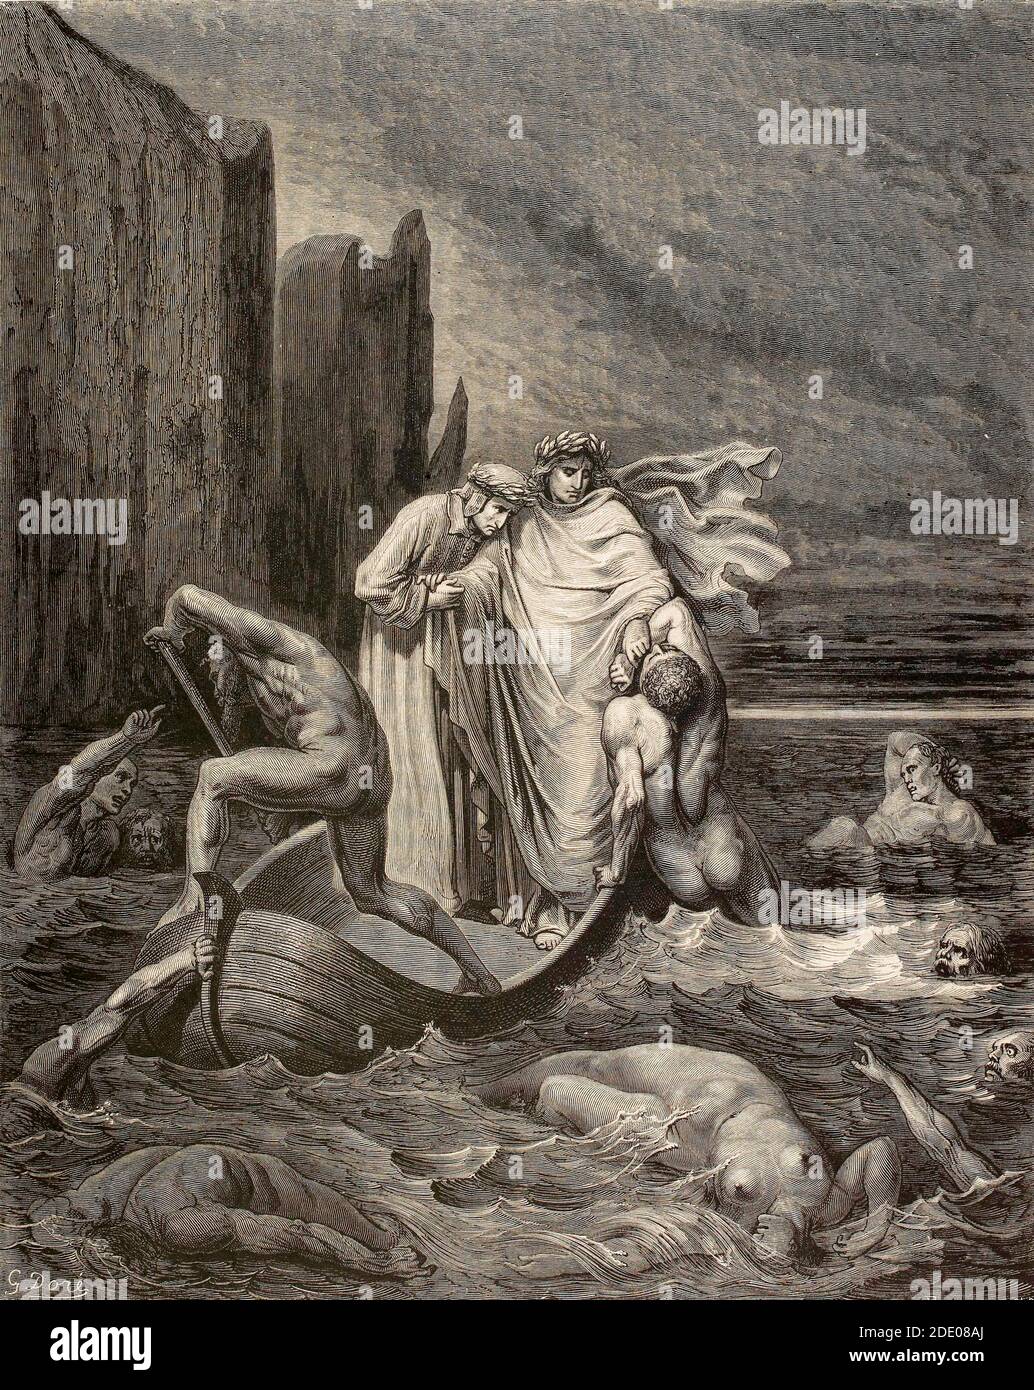 Dante Divina Commedia - Inferno - quinto cerchio - Virgilio Insegue Filippo Argenti che cerca di aggrapparsi alla Barca- canto VIII - illustrazione di Gustave Dorè Foto Stock